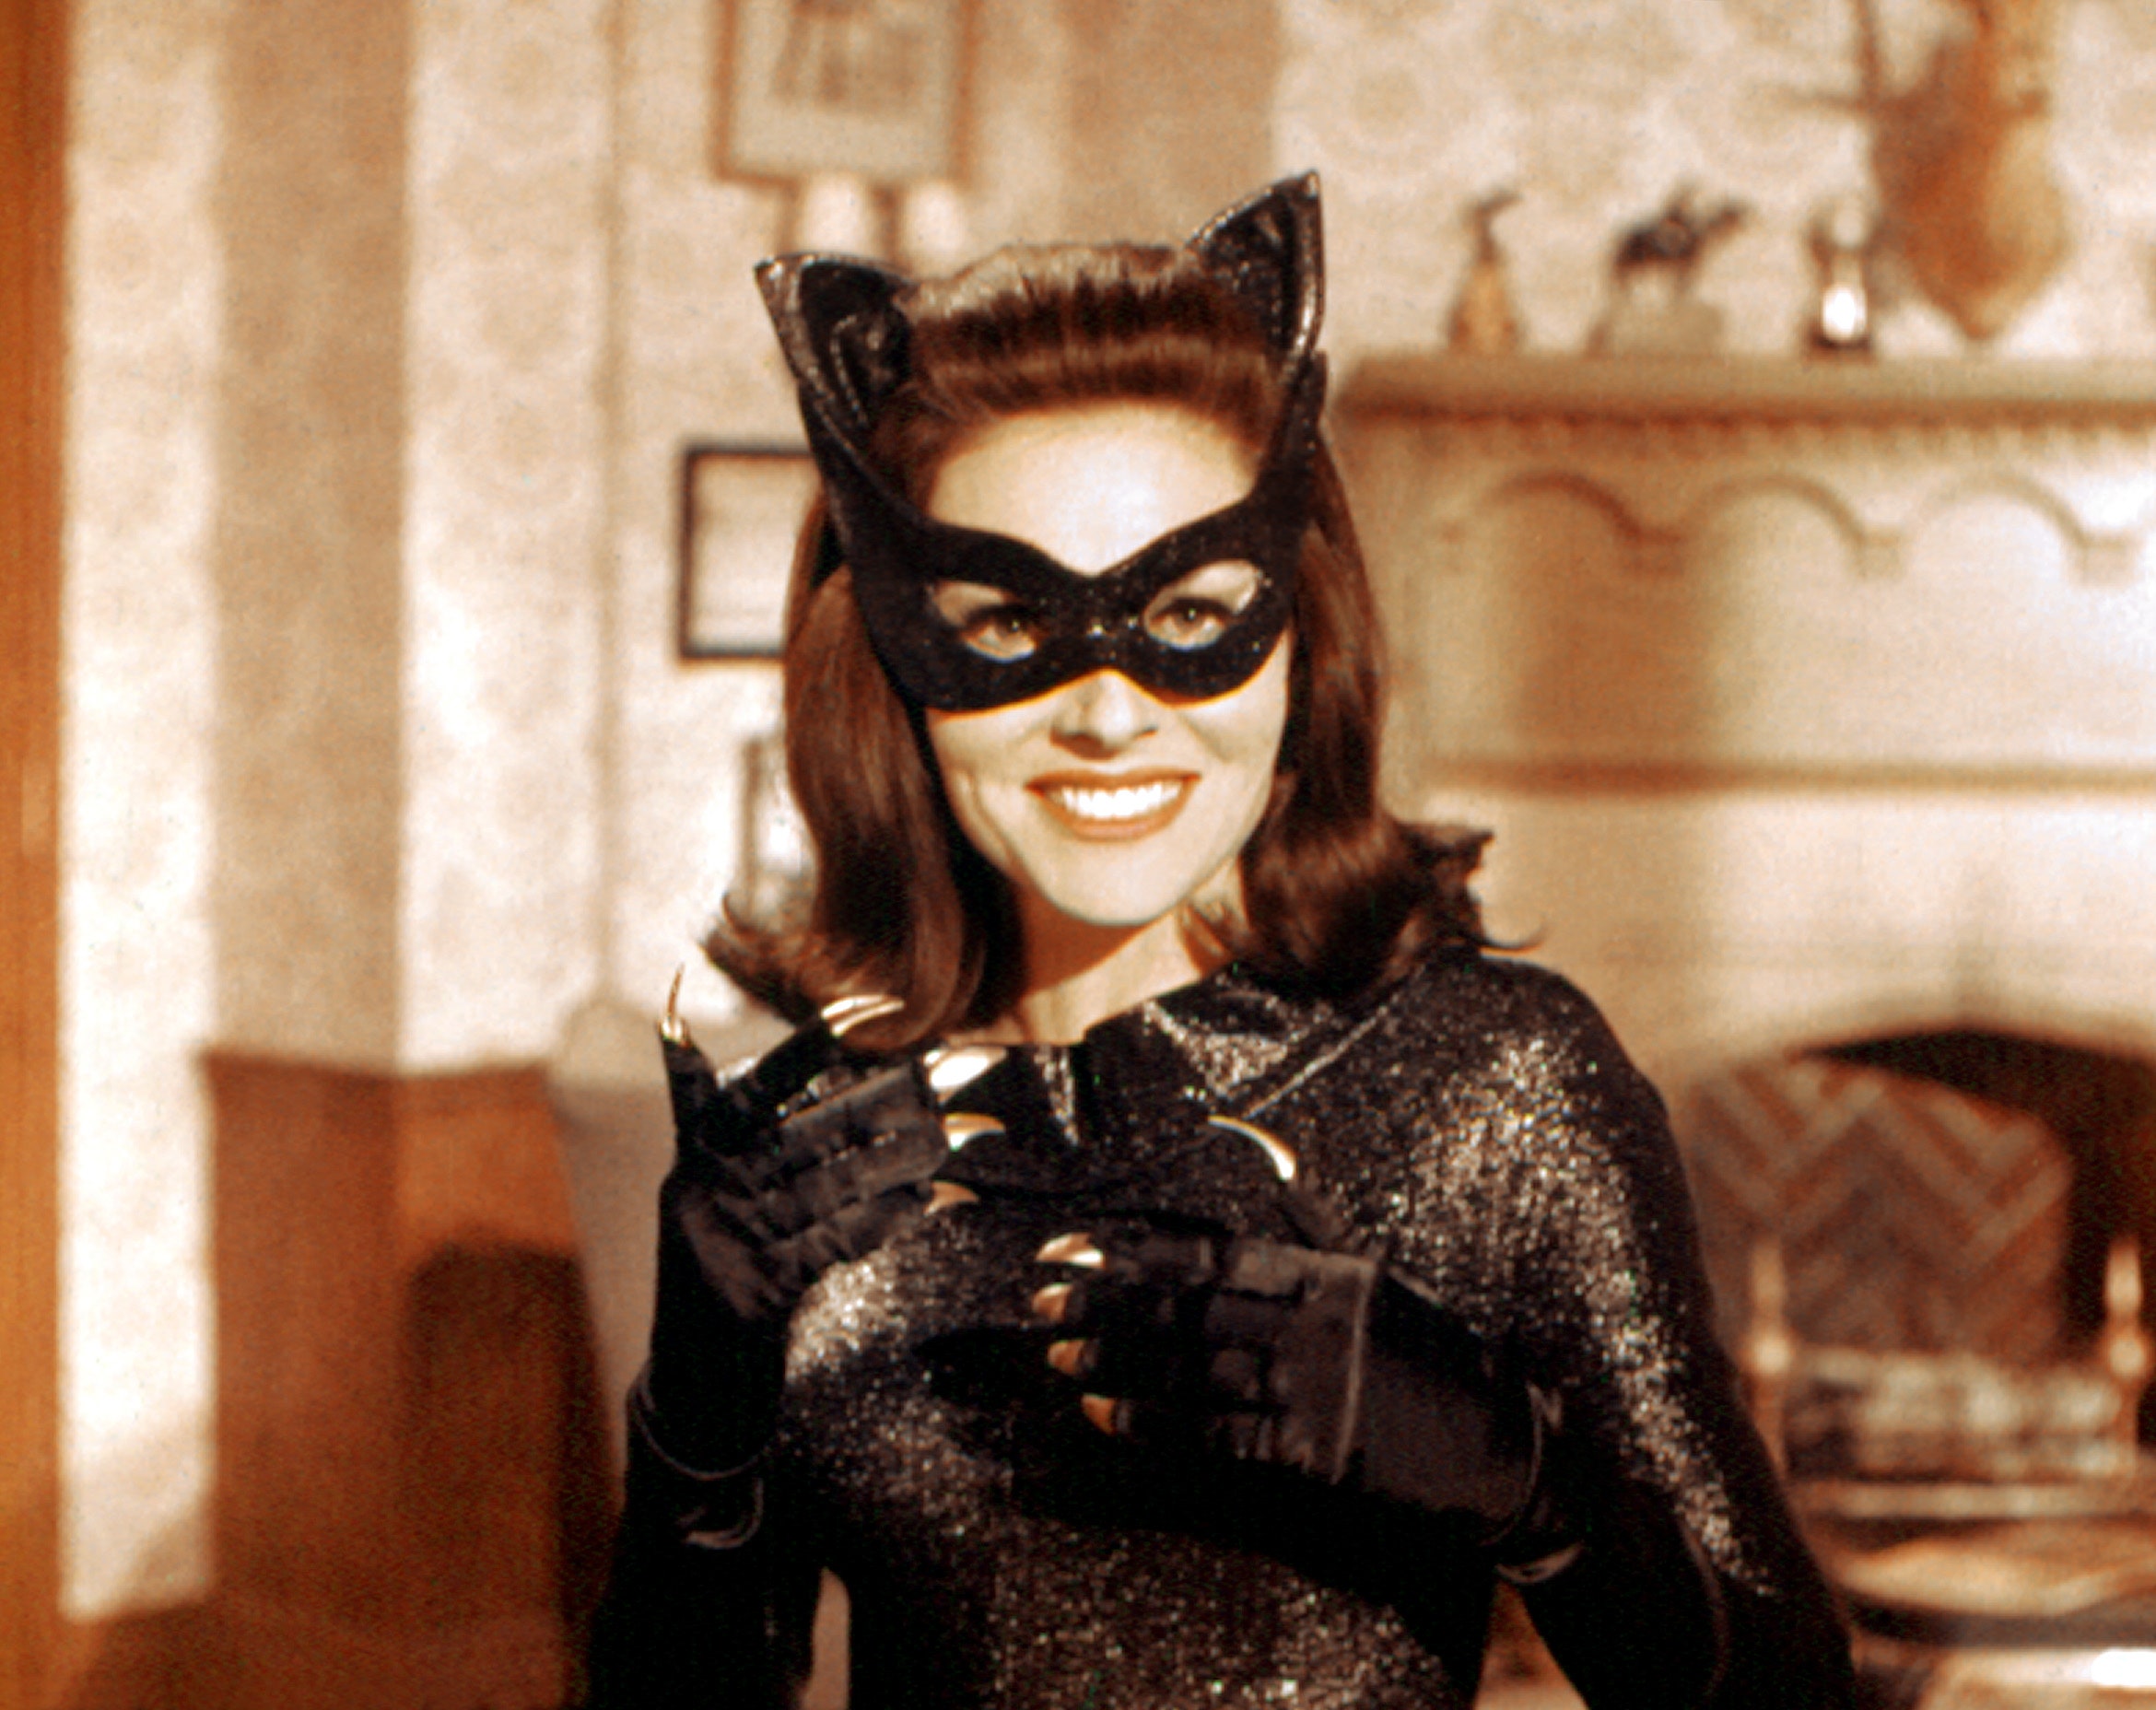 Lee Ann Meriwether in Batman